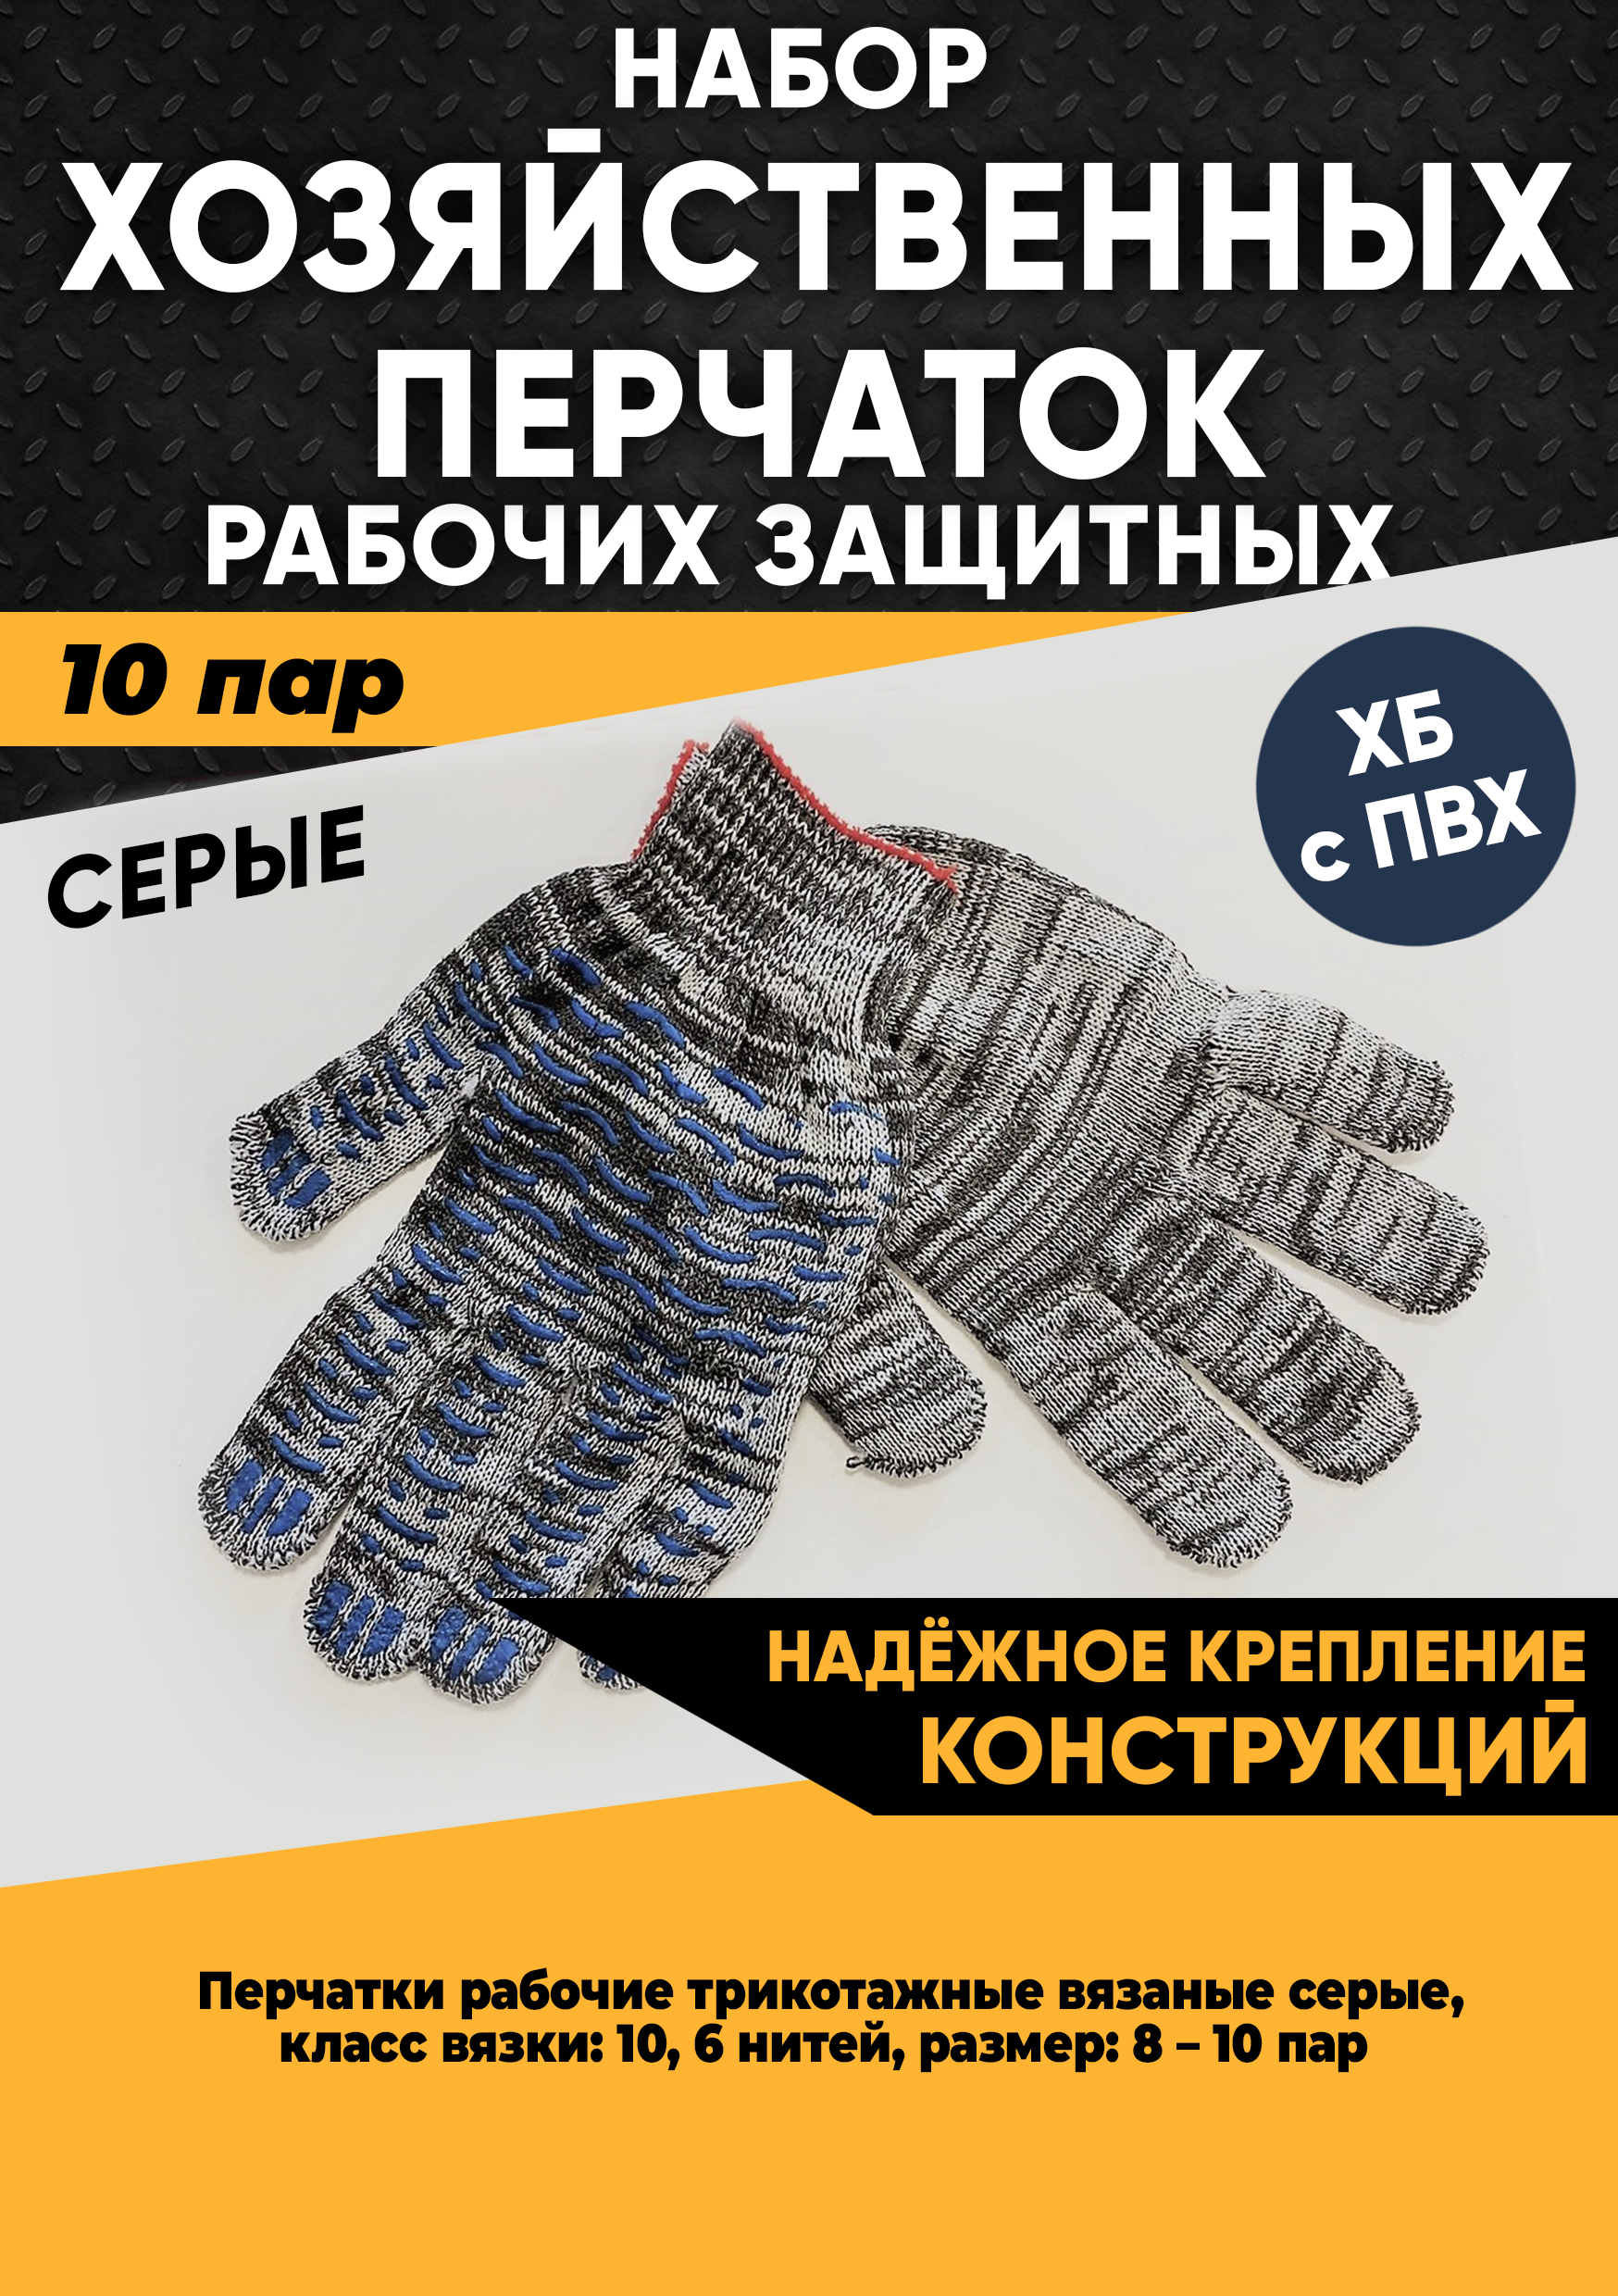 Хозяйственные перчатки KraSimall рабочие защитные ХБ с ПВХ, 6 нитей, серые, 10 пар, 100265 перчатки рабочие строительные усиленные защитные монтажника 67997